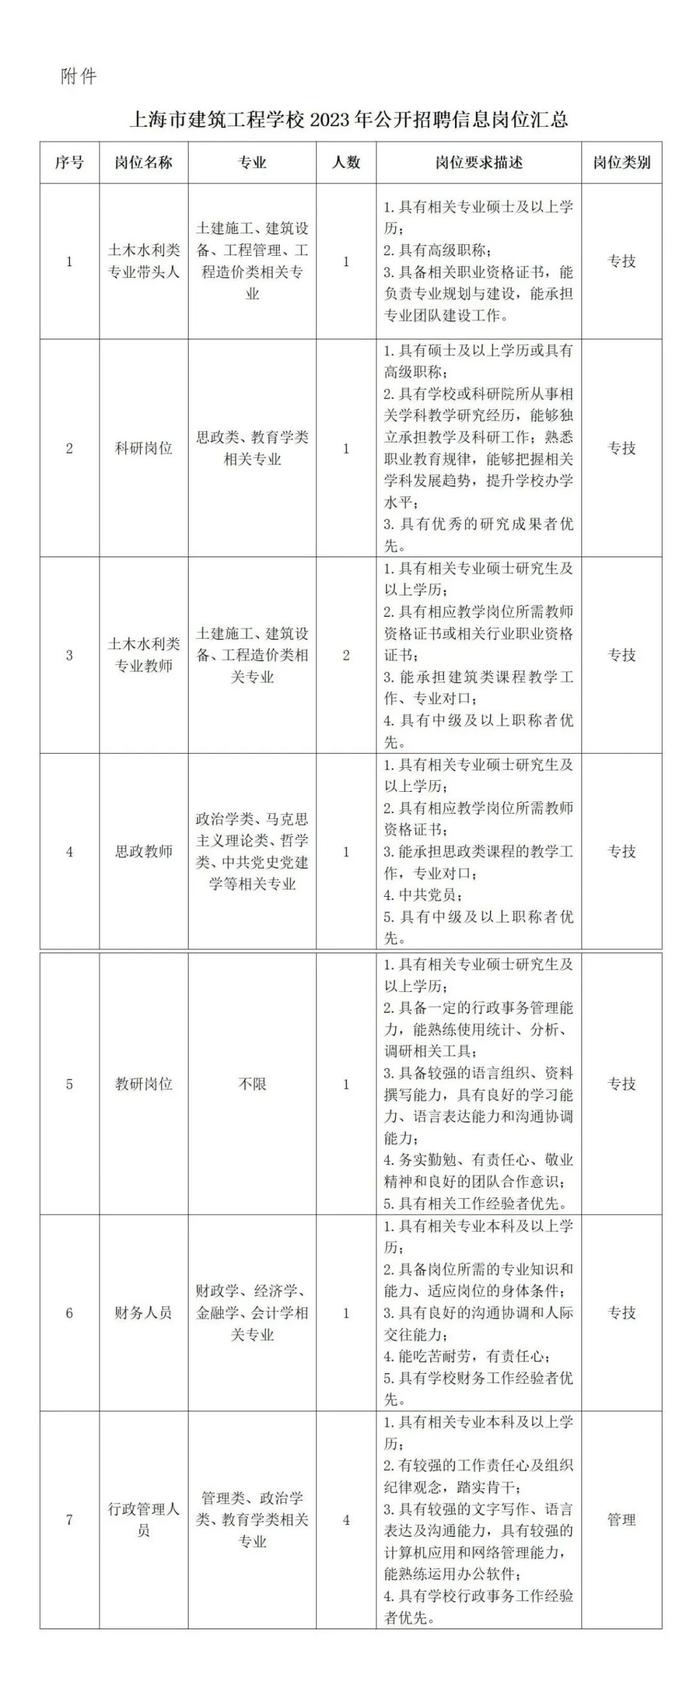 【就业】上海市建筑工程学校公开招聘11名工作人员，7月31日前报名